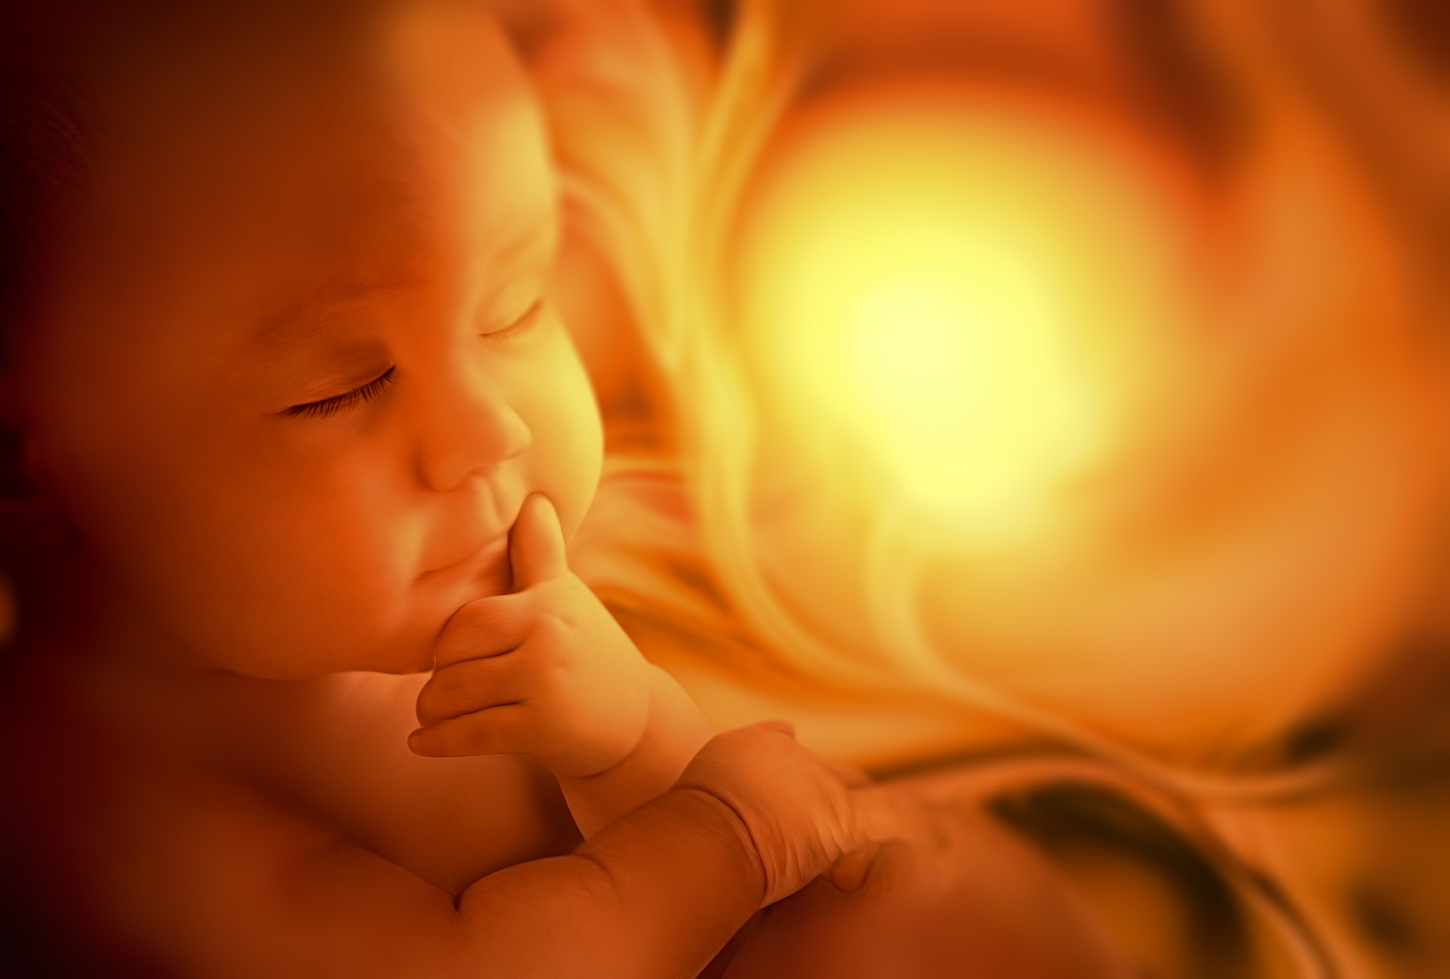 baby in utero womb